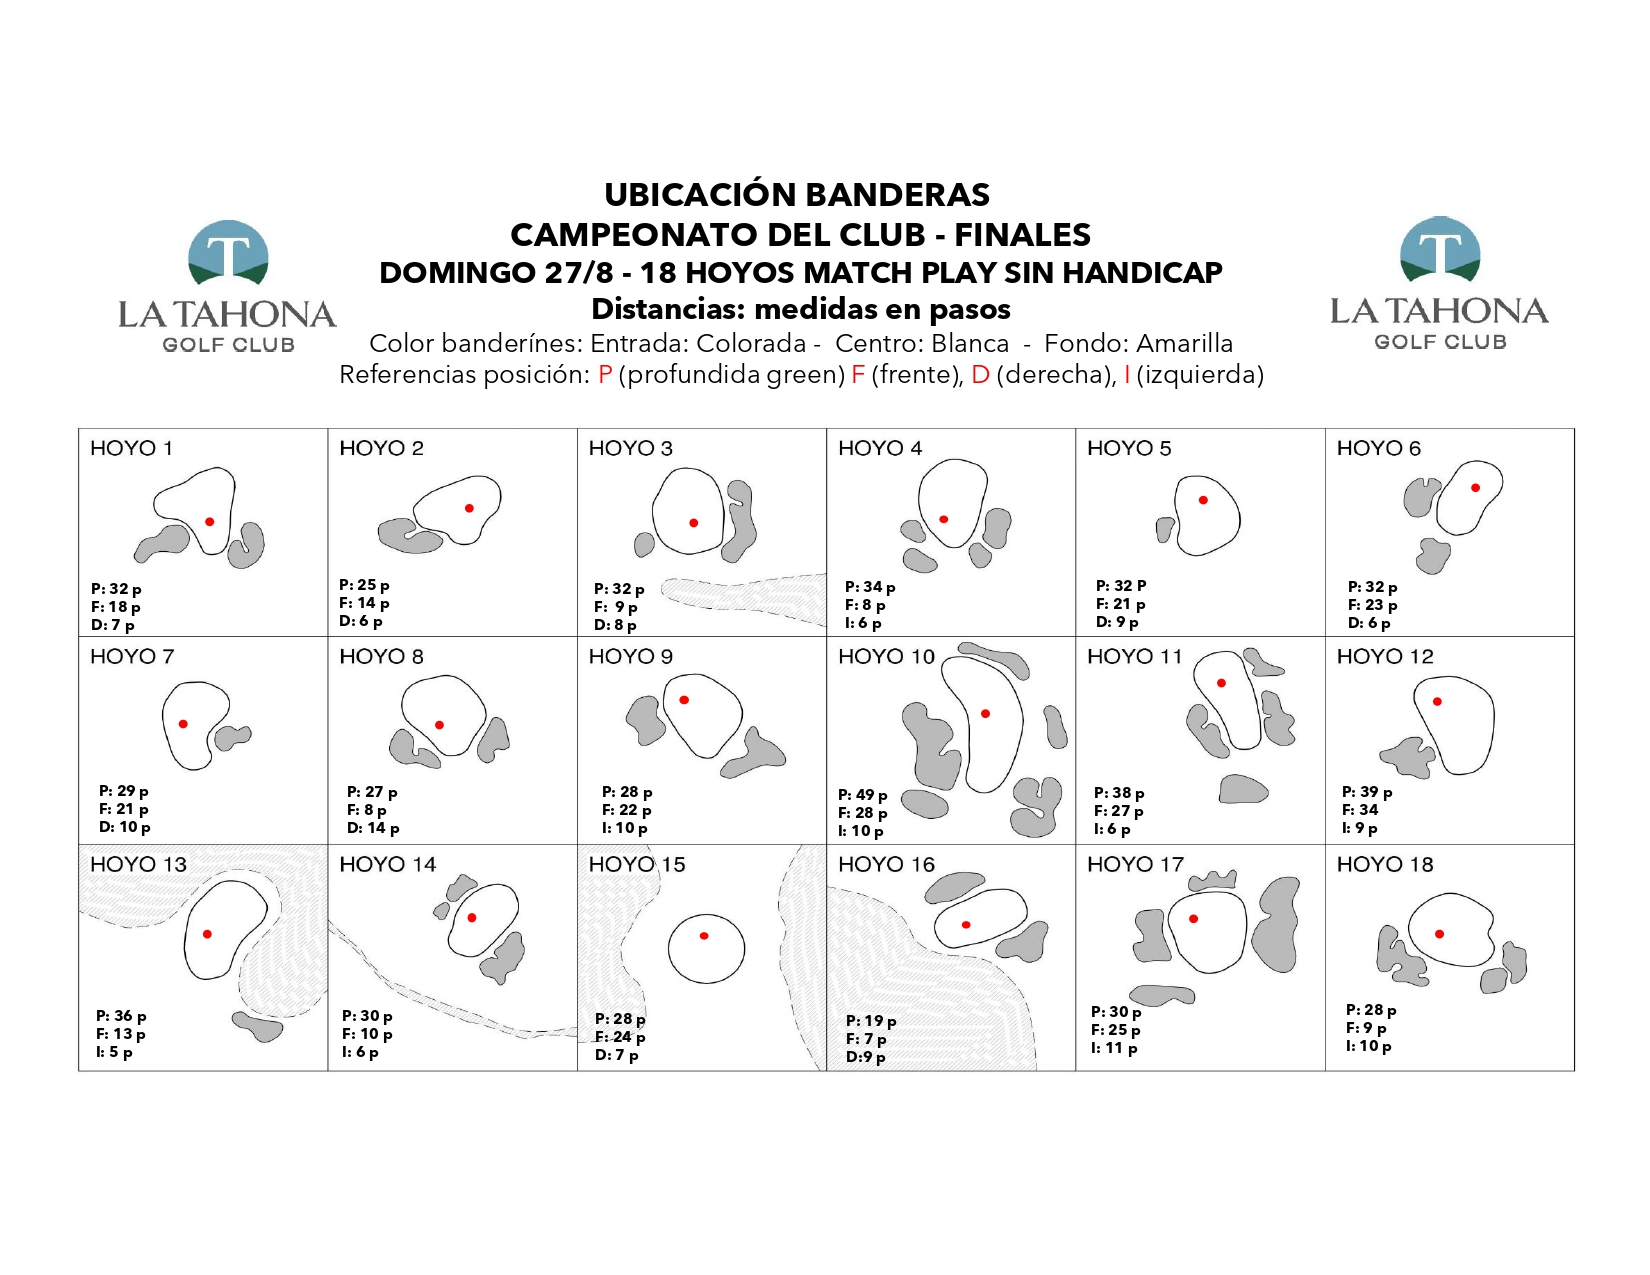 Campeonato del Club - Finales - Domingo 27/8 - Posicin de banderas para hoy